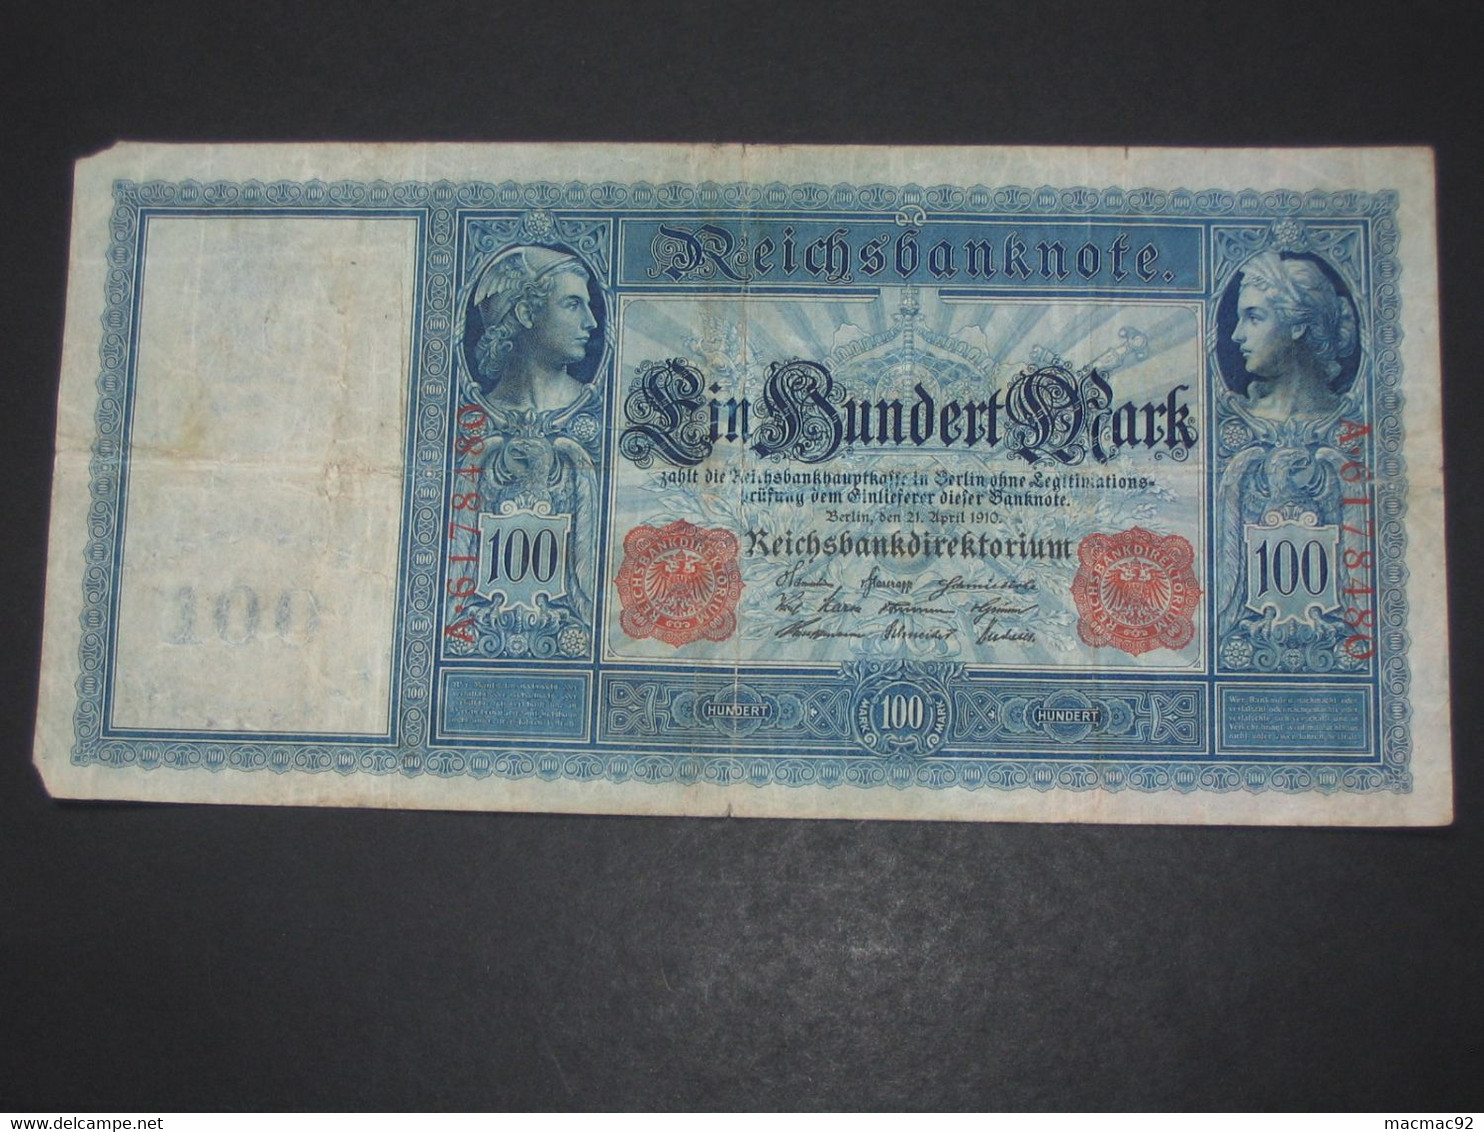 ALLEMAGNE - 100 EIN HUNDERT  MARK - Berlin 1910  Reichsbanknote - Germany **** EN ACHAT IMMEDIAT **** - 100 Mark